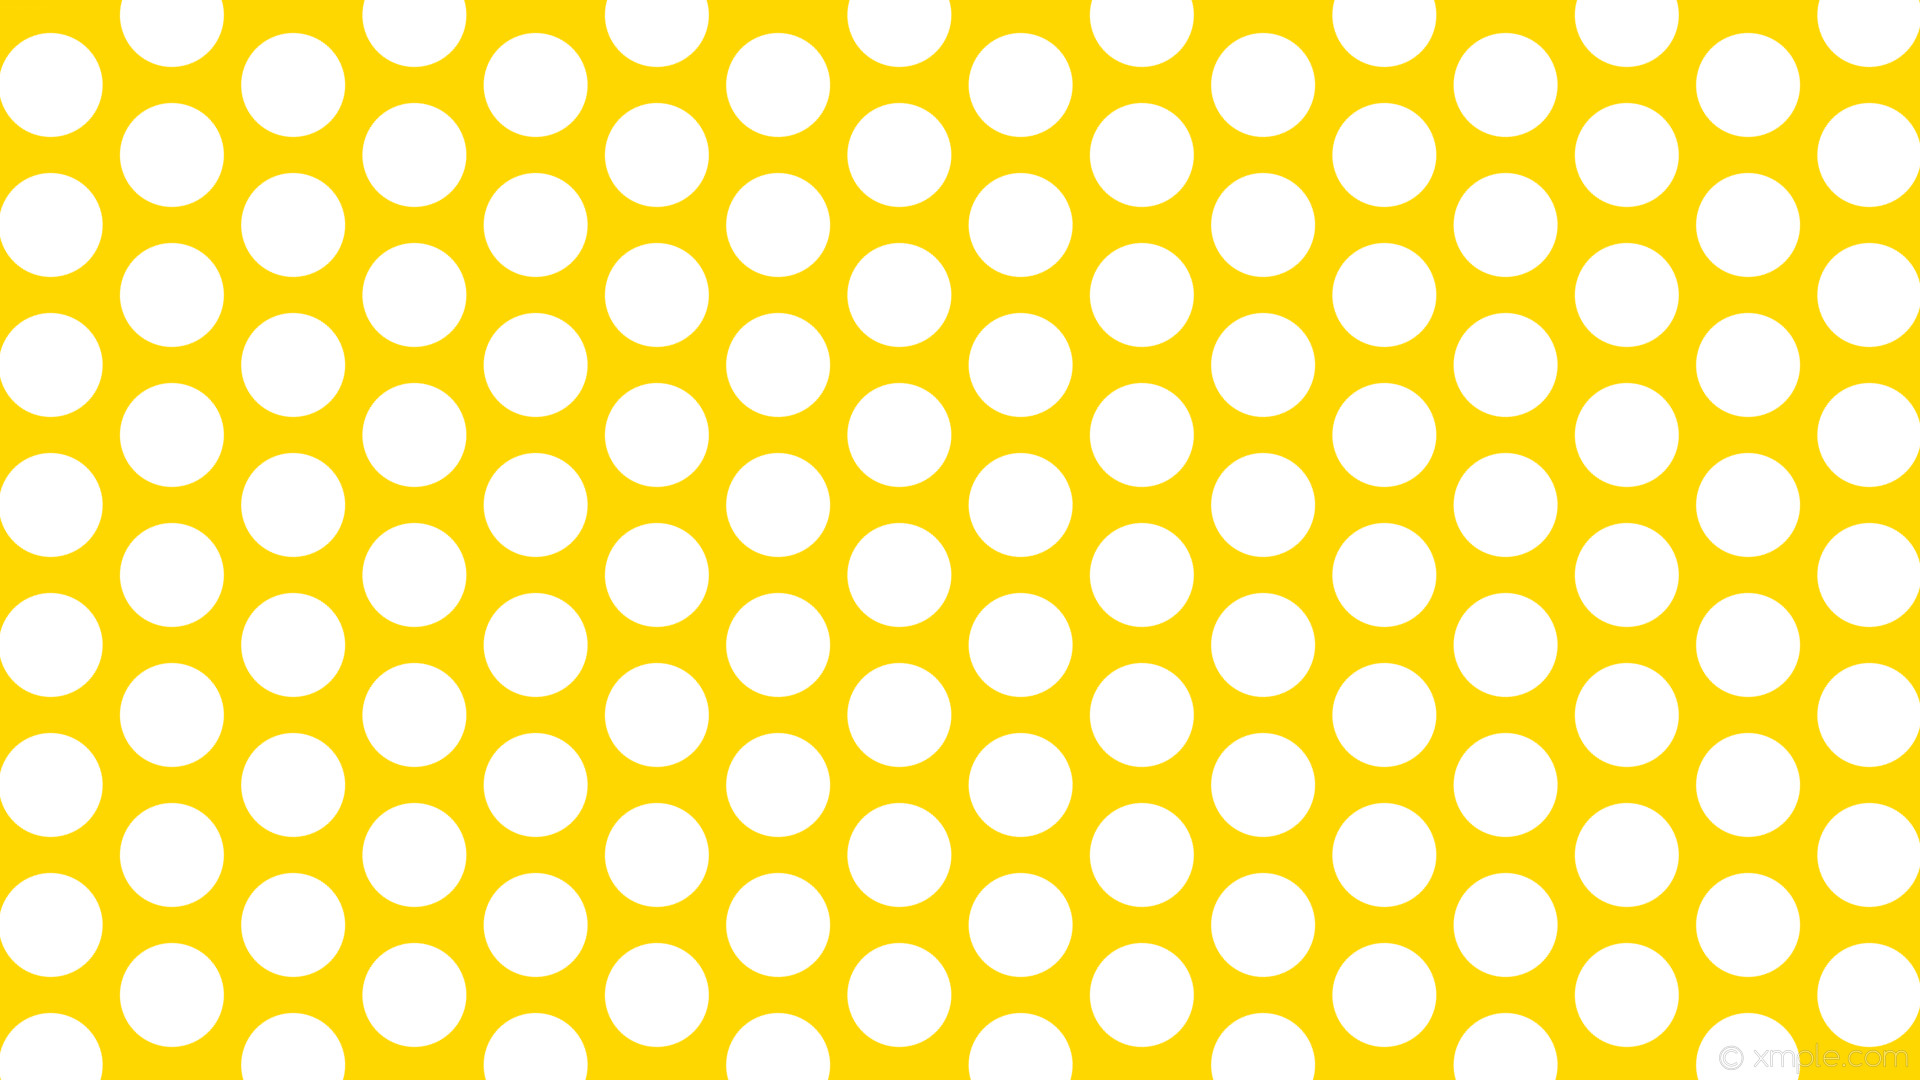 1920x1080 wallpaper polka dots hexagon yellow white gold #ffd700 #ffffff diagonal 30Â°  104px 140px